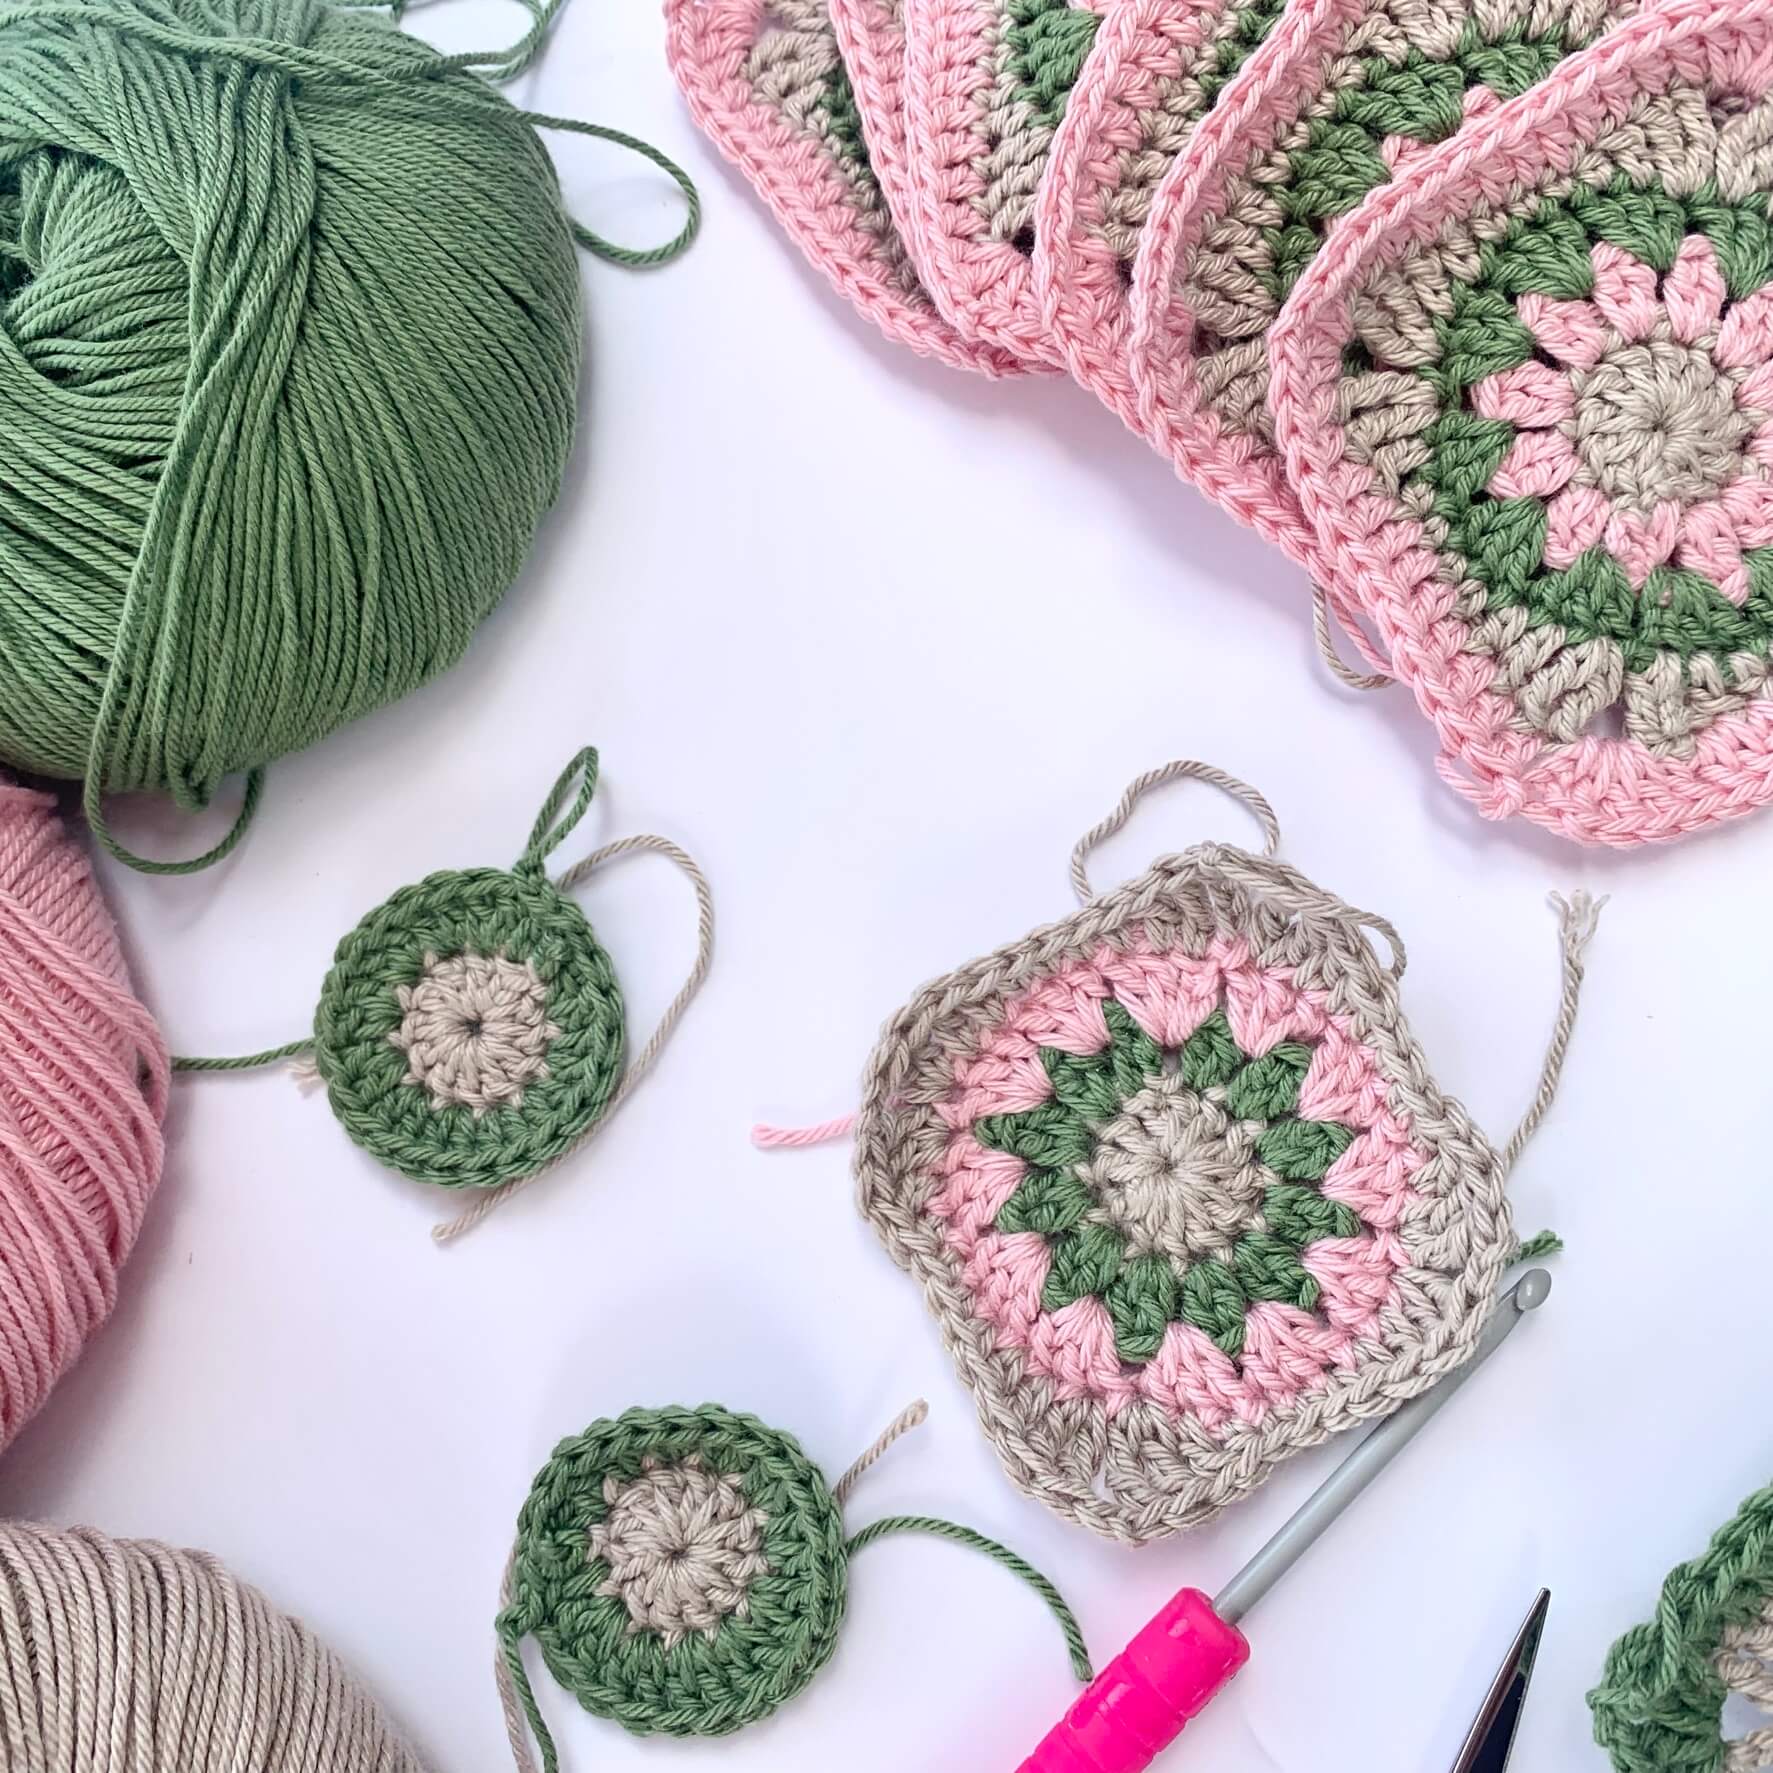 Crochet Santa Gift Basket with Lid crochet pattern